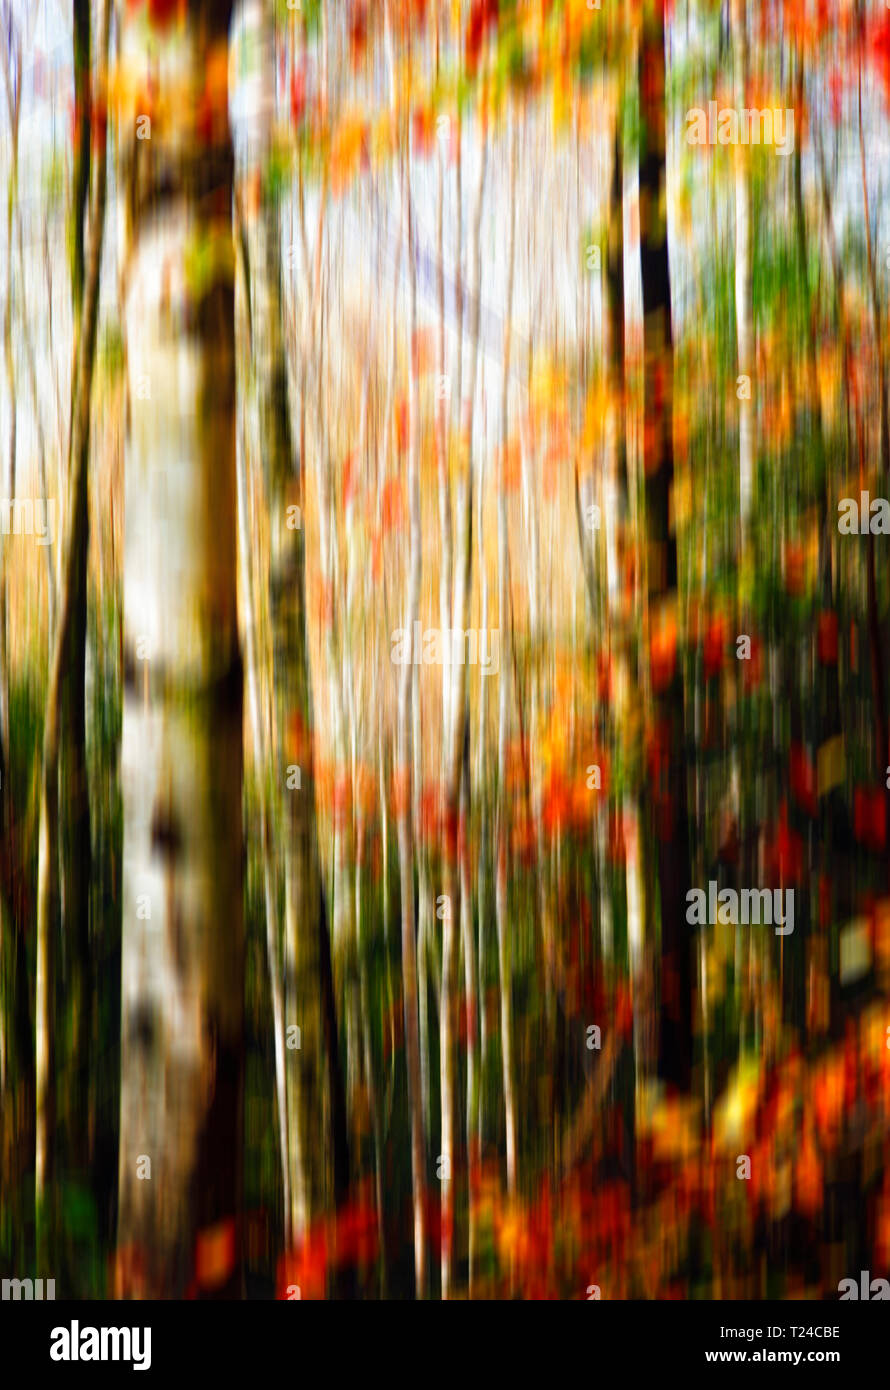 Blurred birch forest in autumn Stock Photo